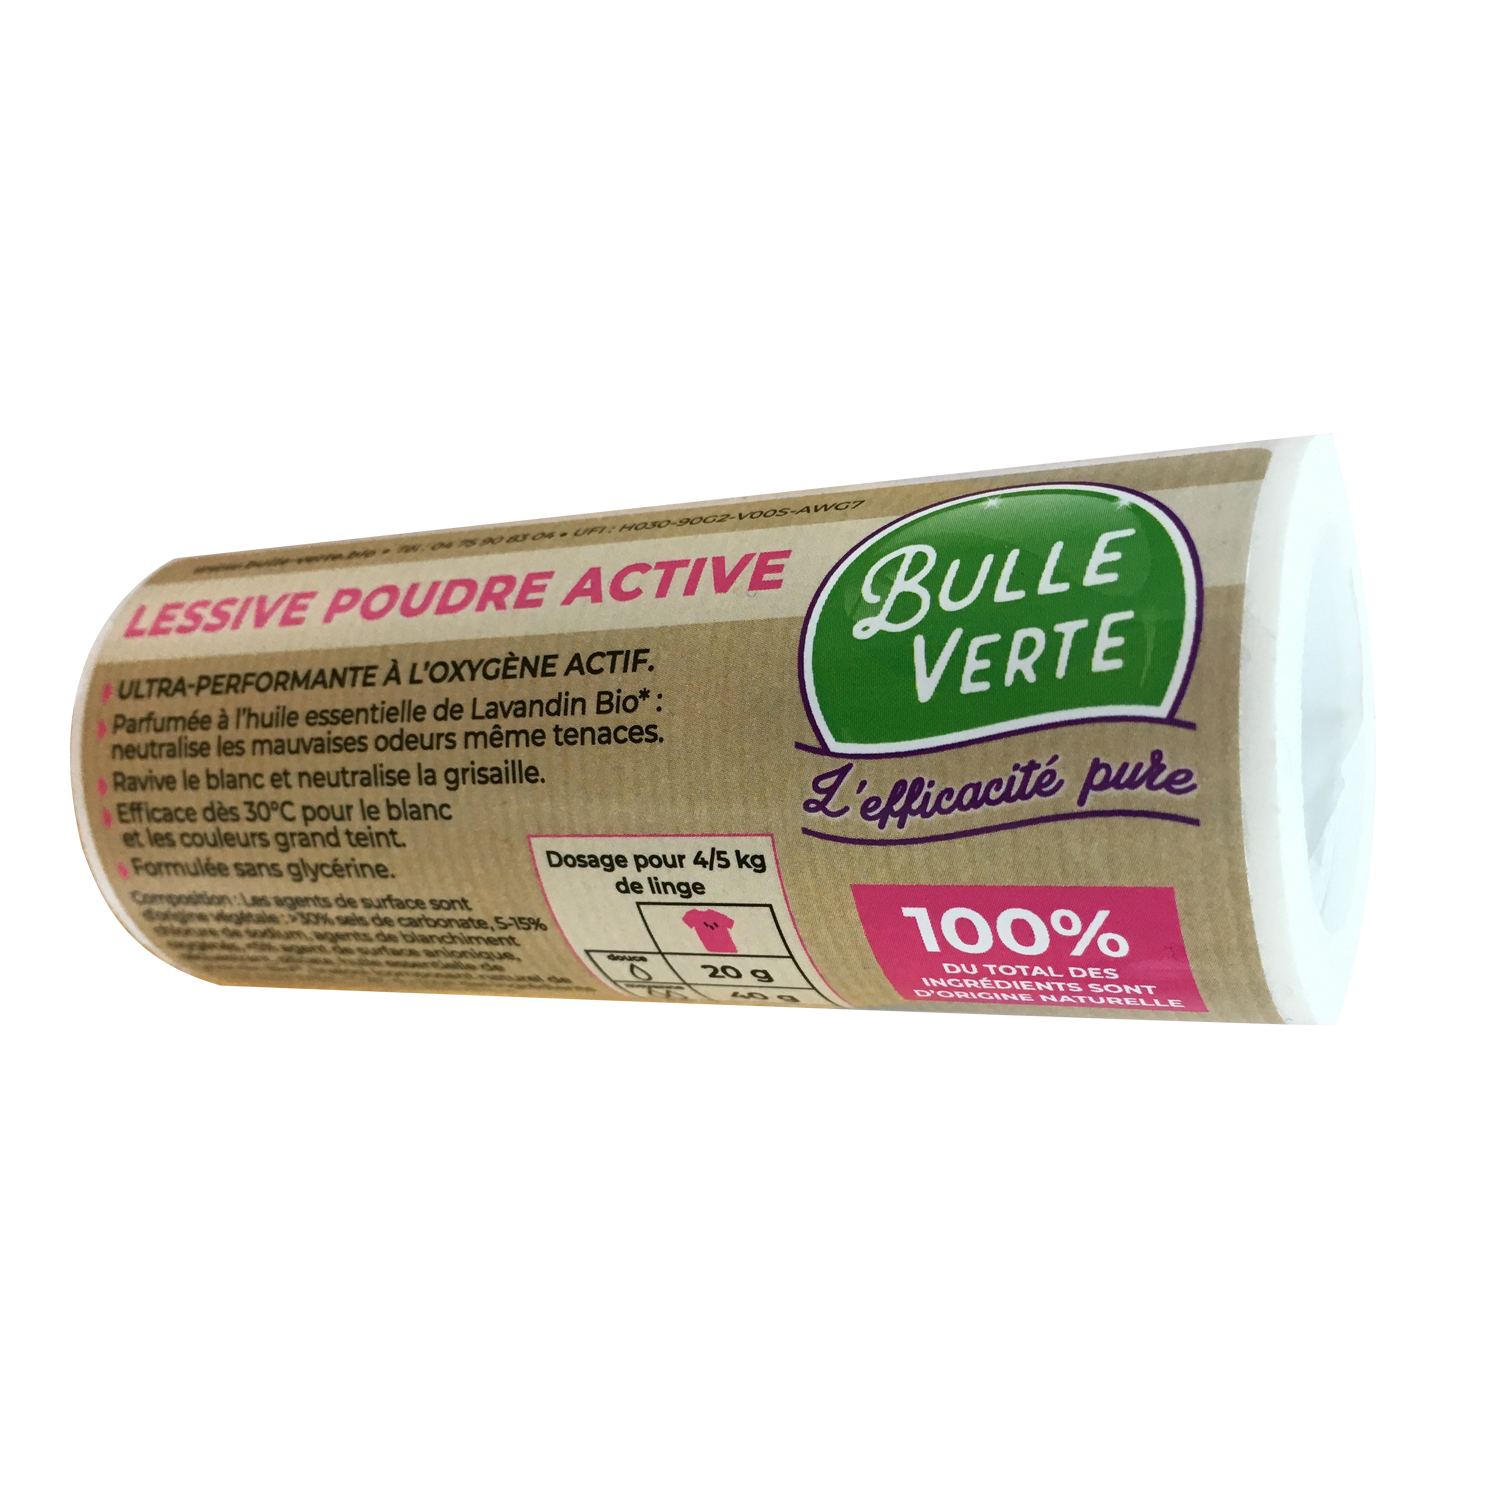 Bulle Verte Autocollant lessive poudre active bac - 9305